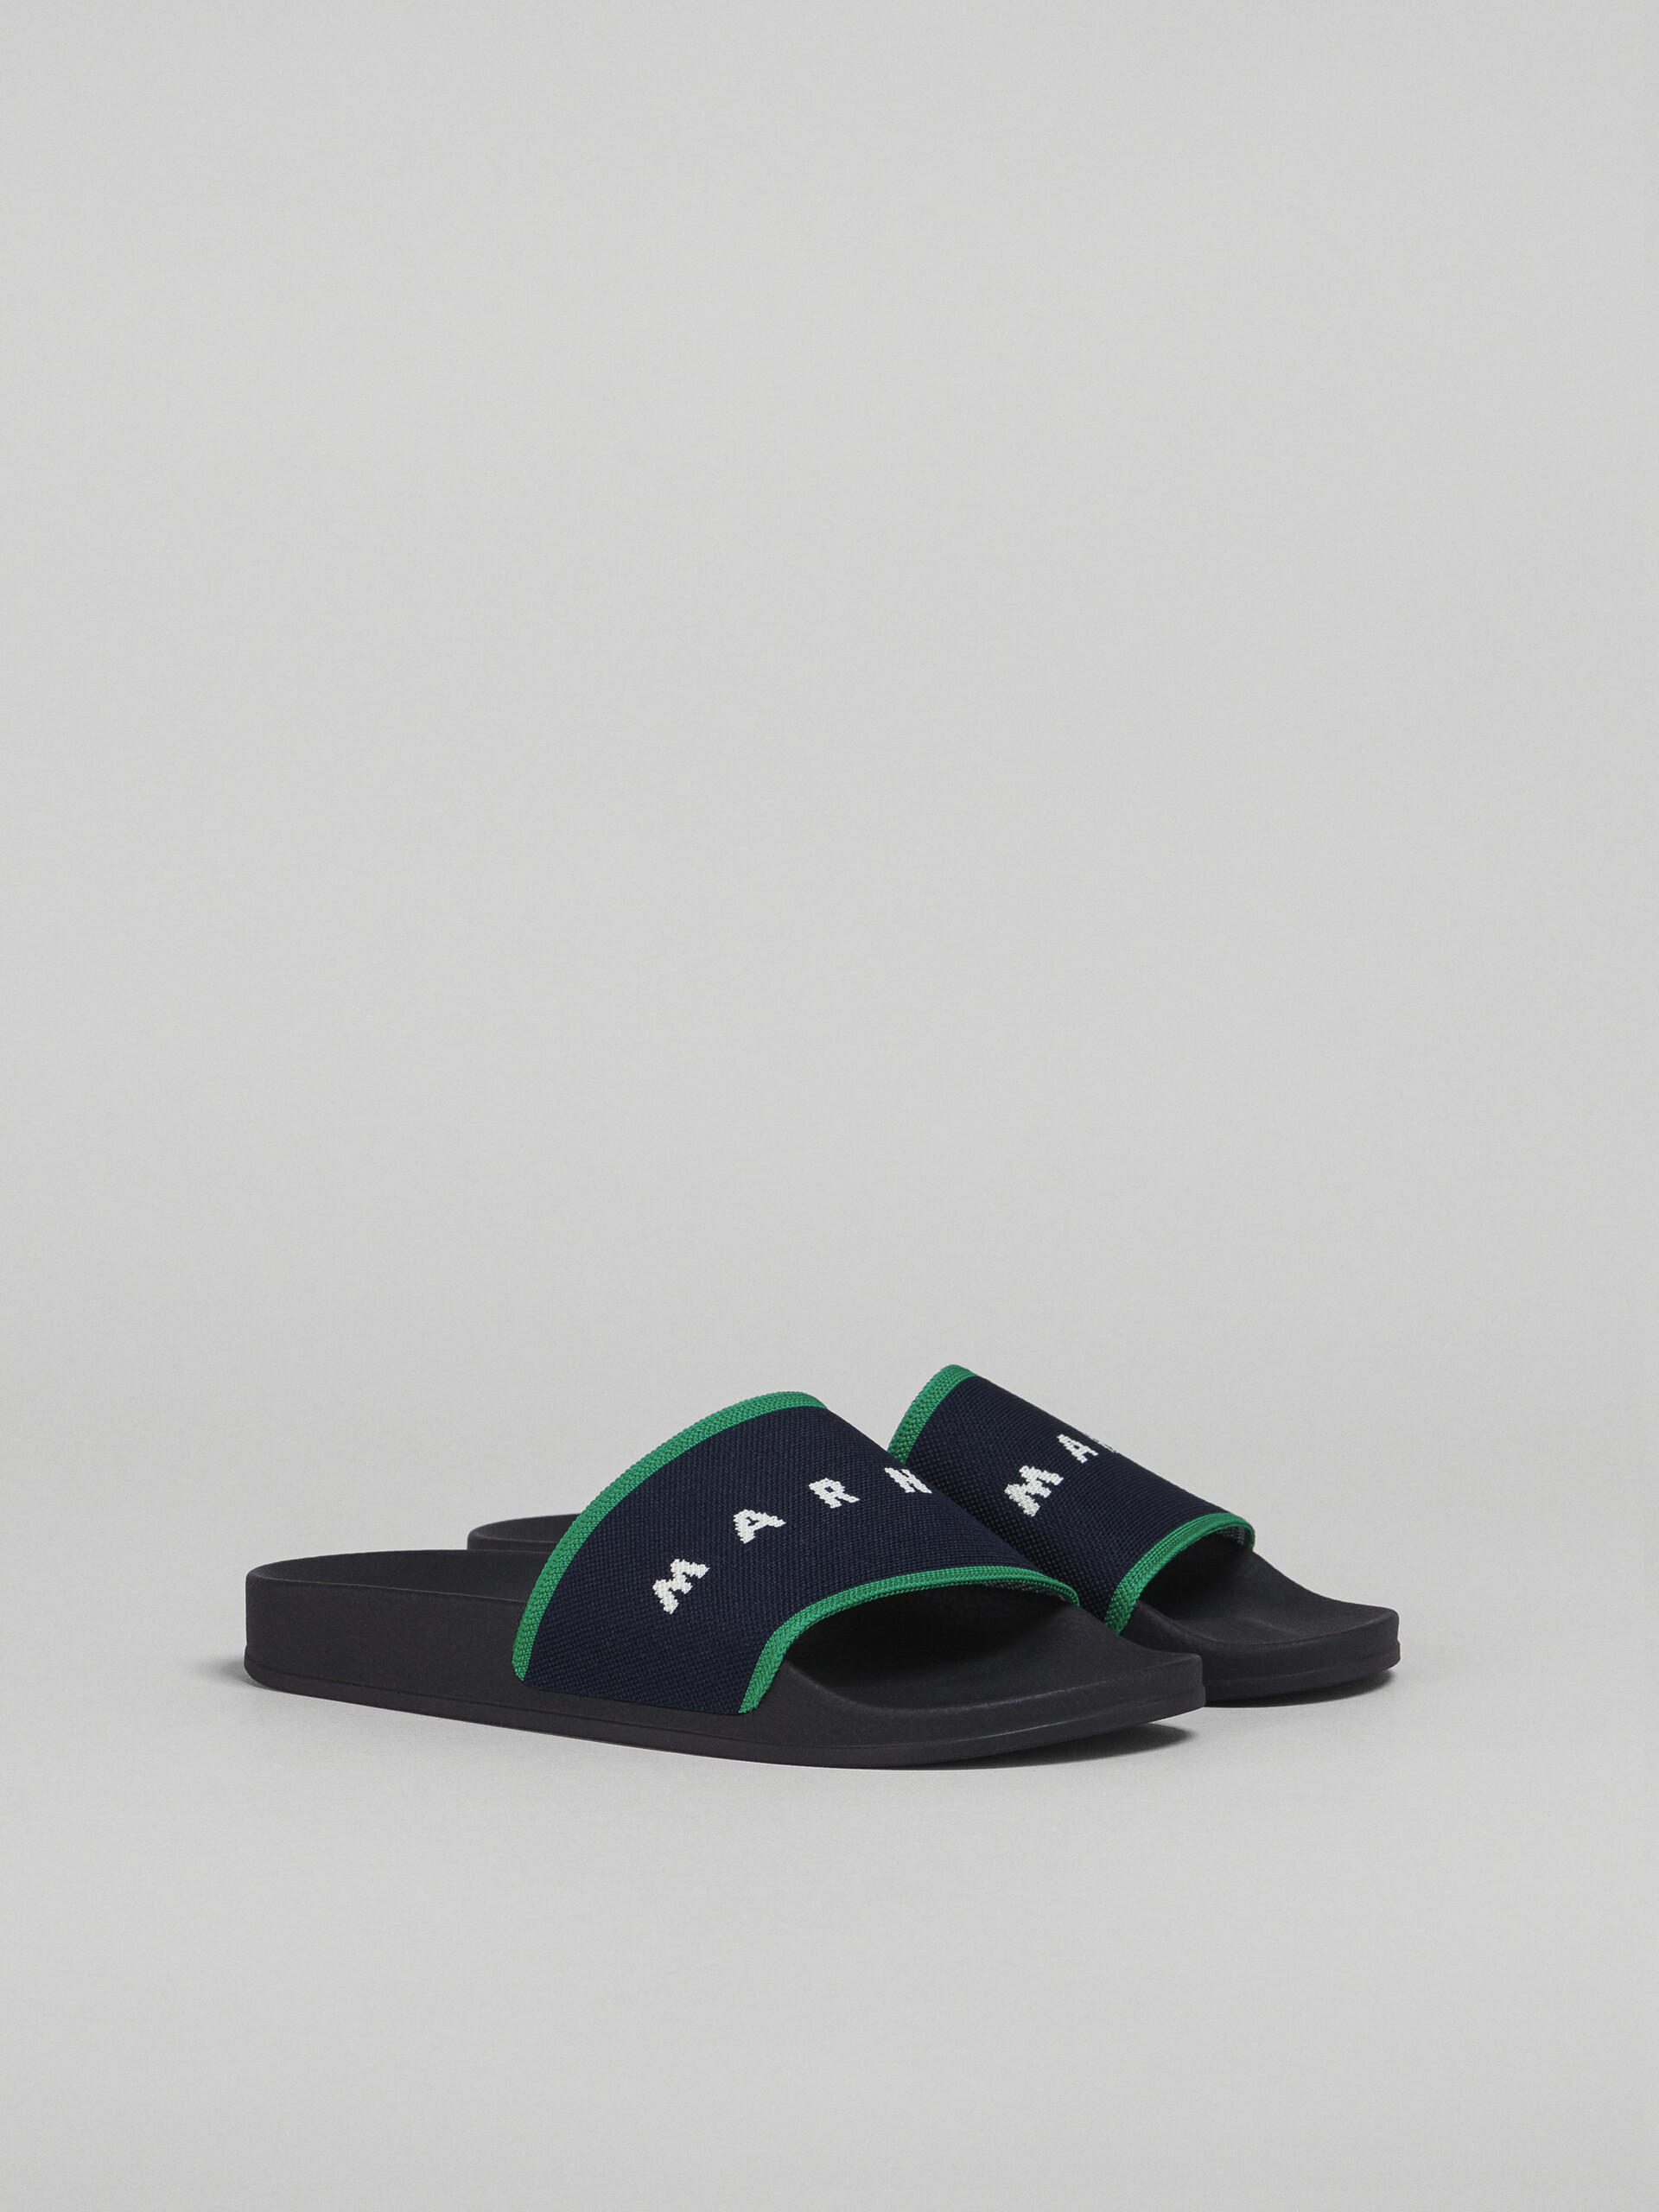 Blueblack and green stretch logo jacquard slide - Sandals - Image 2